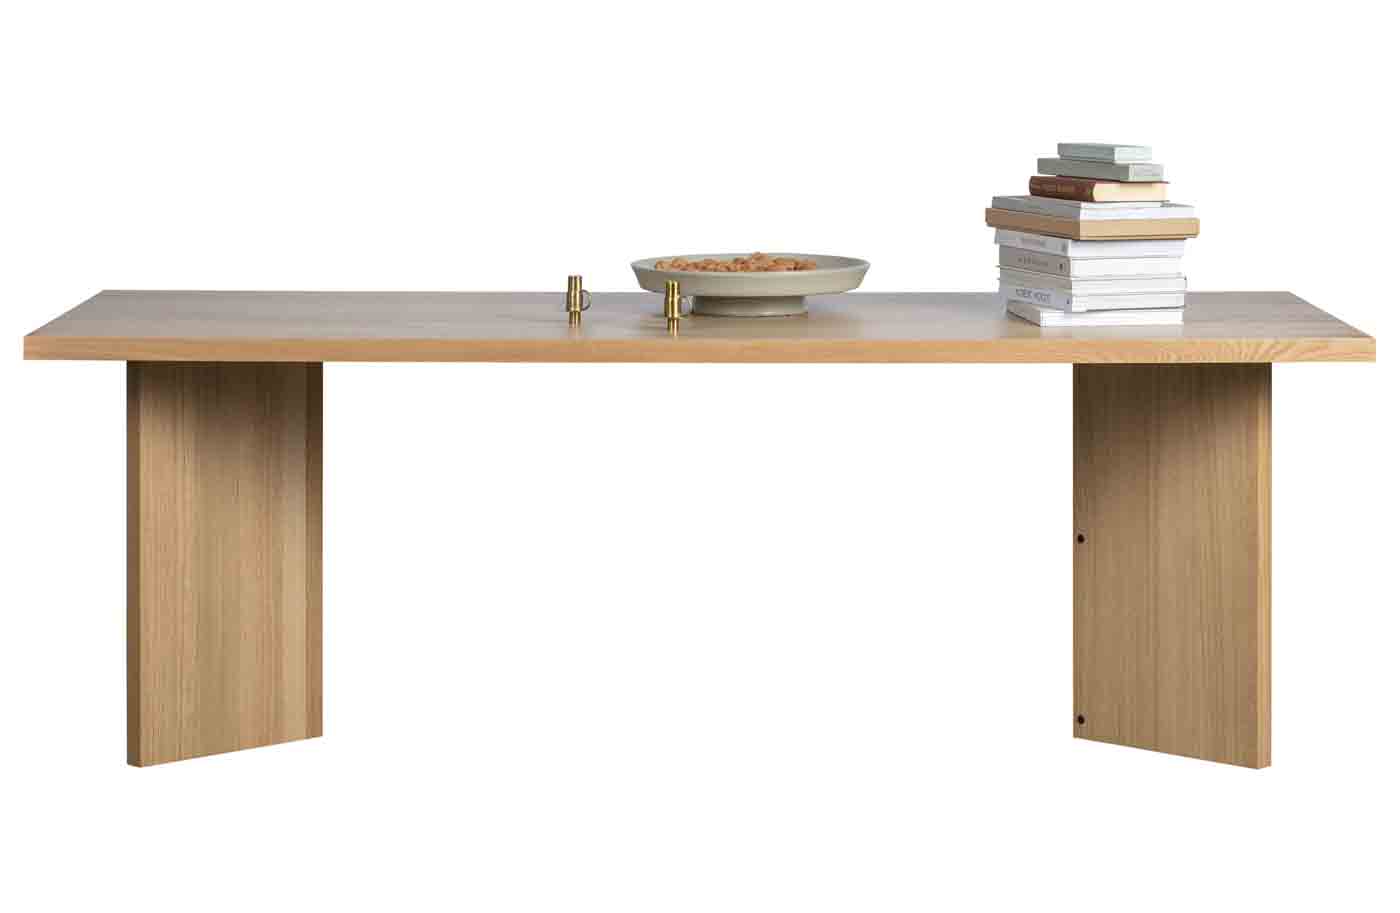 Hochwertiger Esstisch Eiche Angle in 220cm Länge mit feinem Echtholzfurnier. Tischplatte und Gestell in Eichenholz gefertigt